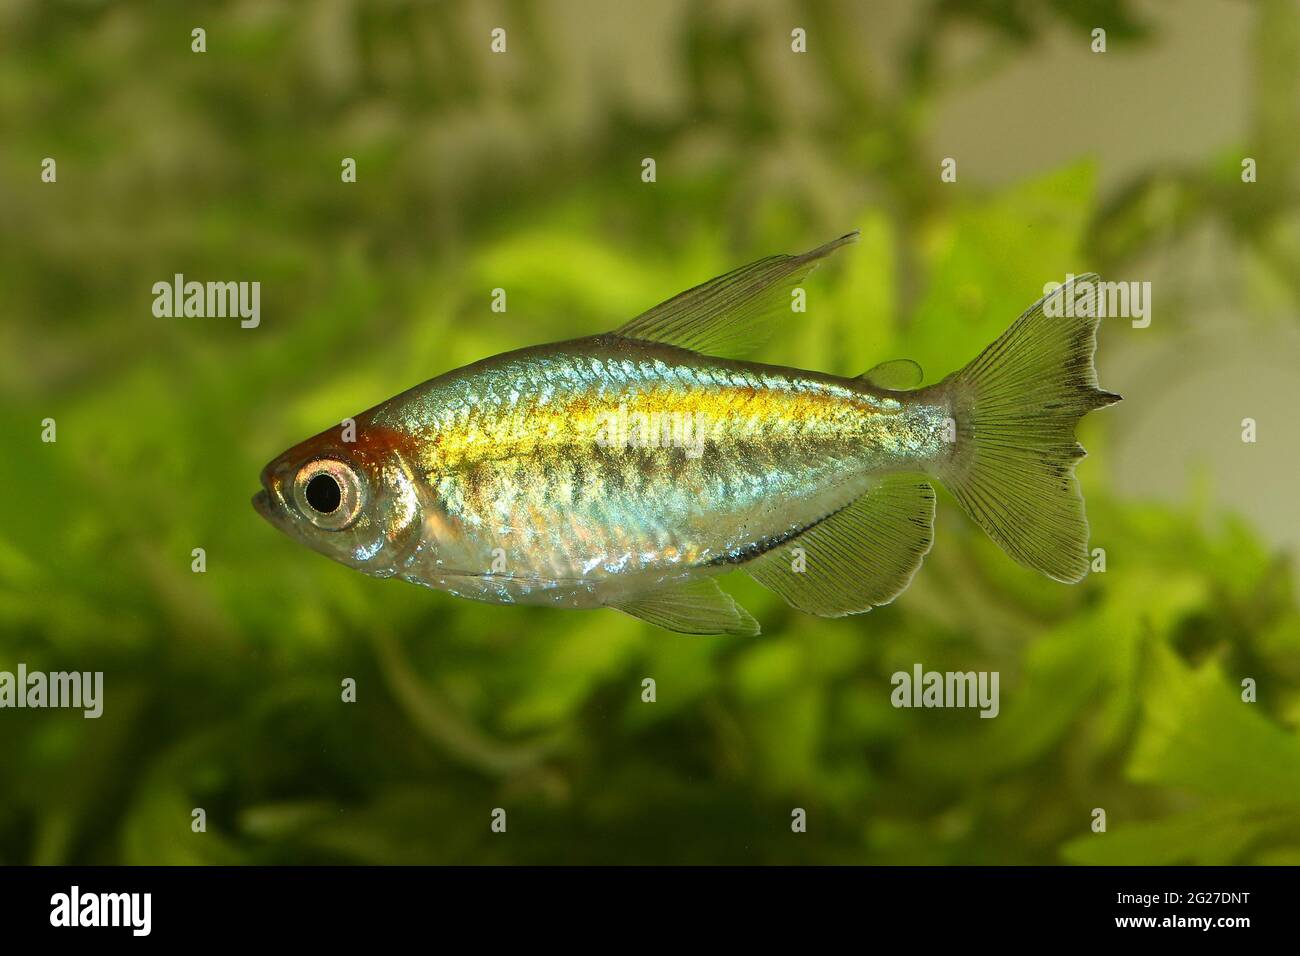 Congo tetra aquarium fish Phenacogrammus interruptus Stock Photo